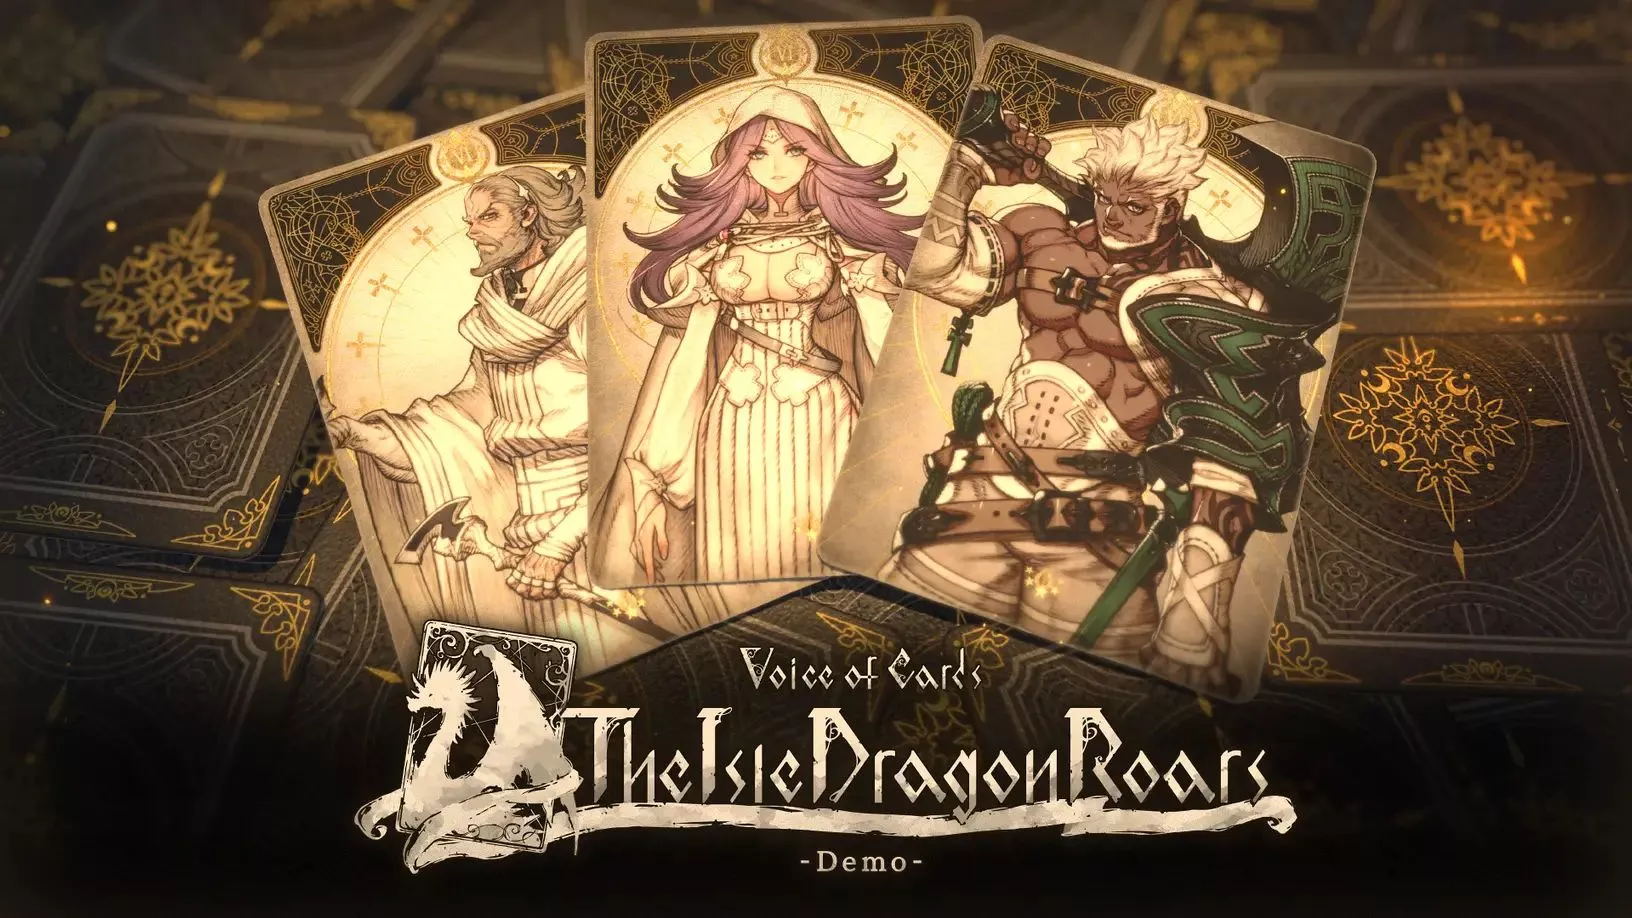 Voice of Cards: The Isle Dragon Roars bildet ein klassisches Kartenspiel als RPG ab Heropic